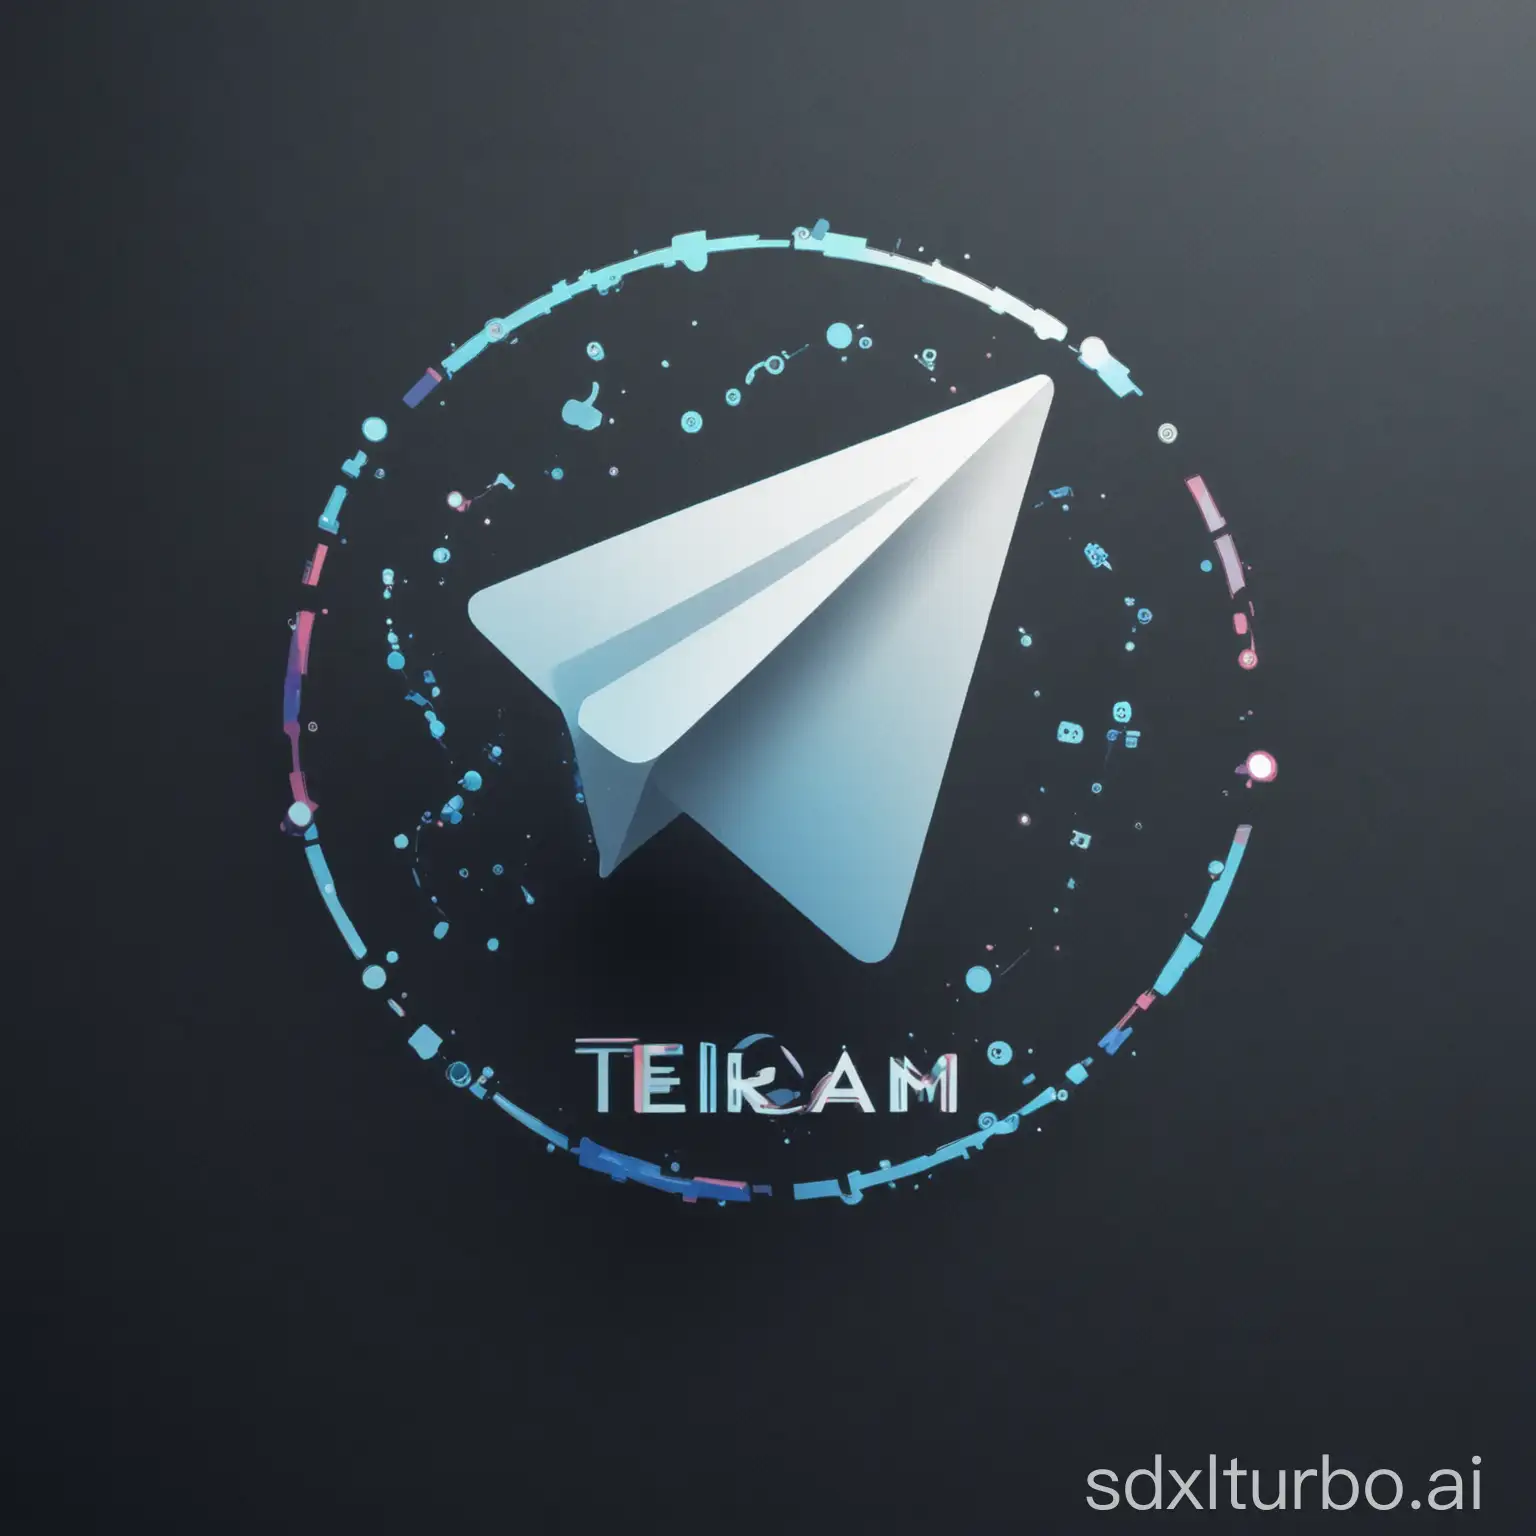 我是一家人工智能的公司，目前在做的是telegram 机器人等ai虚拟数字产品，生成一个品牌logo